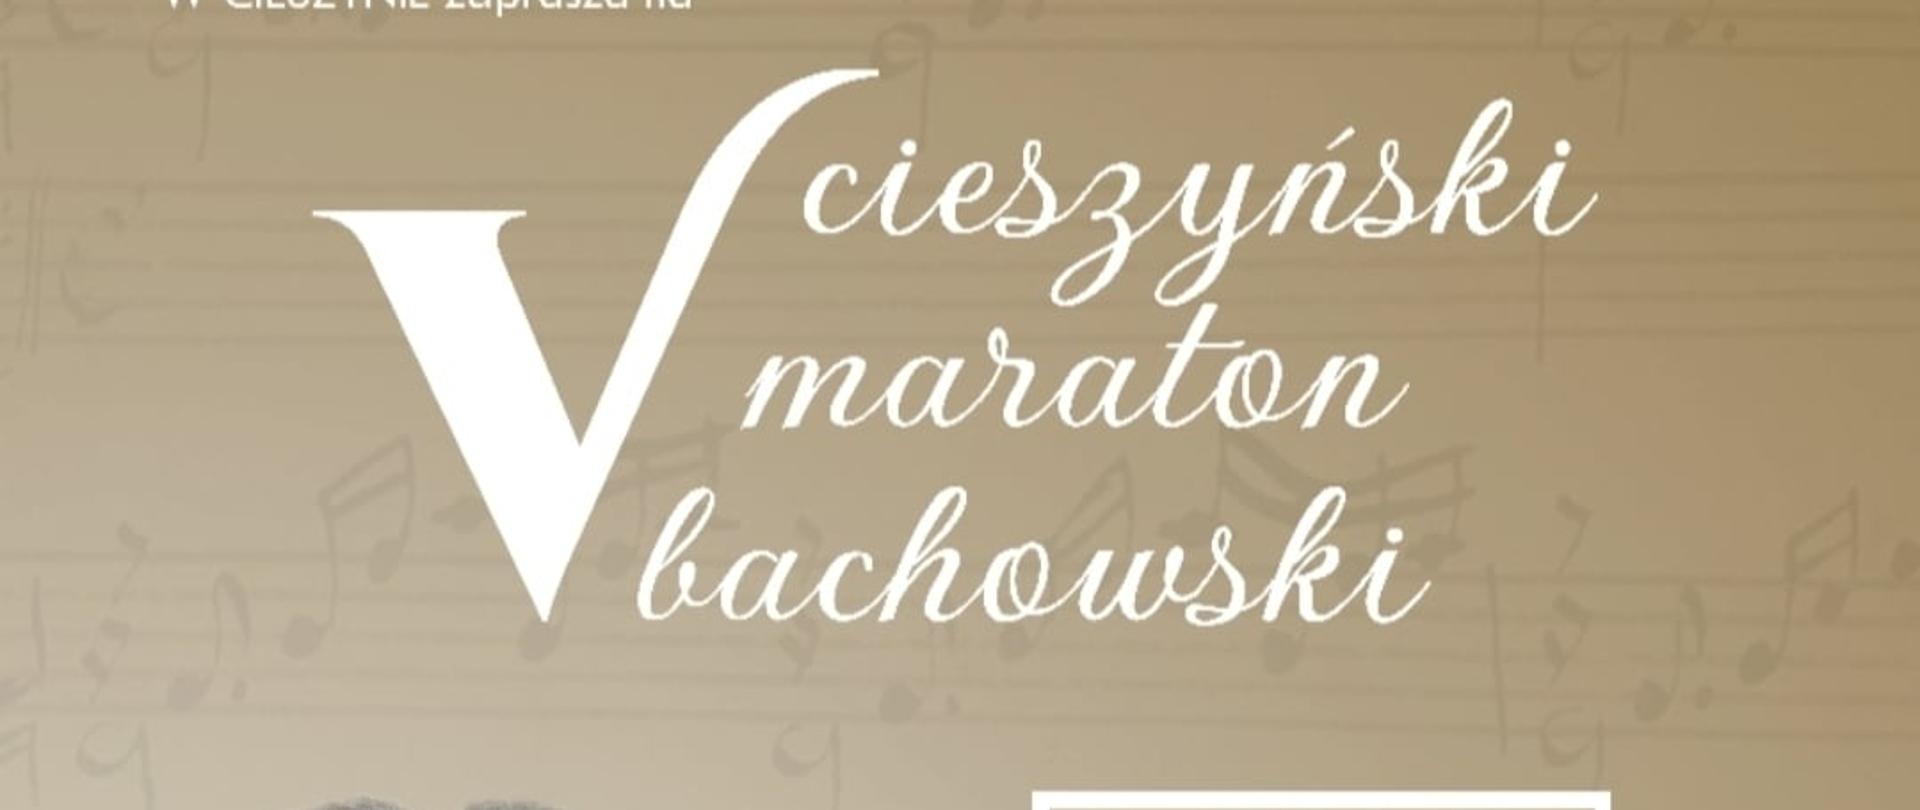 Plakat V Cieszyński Maraton Bachowski